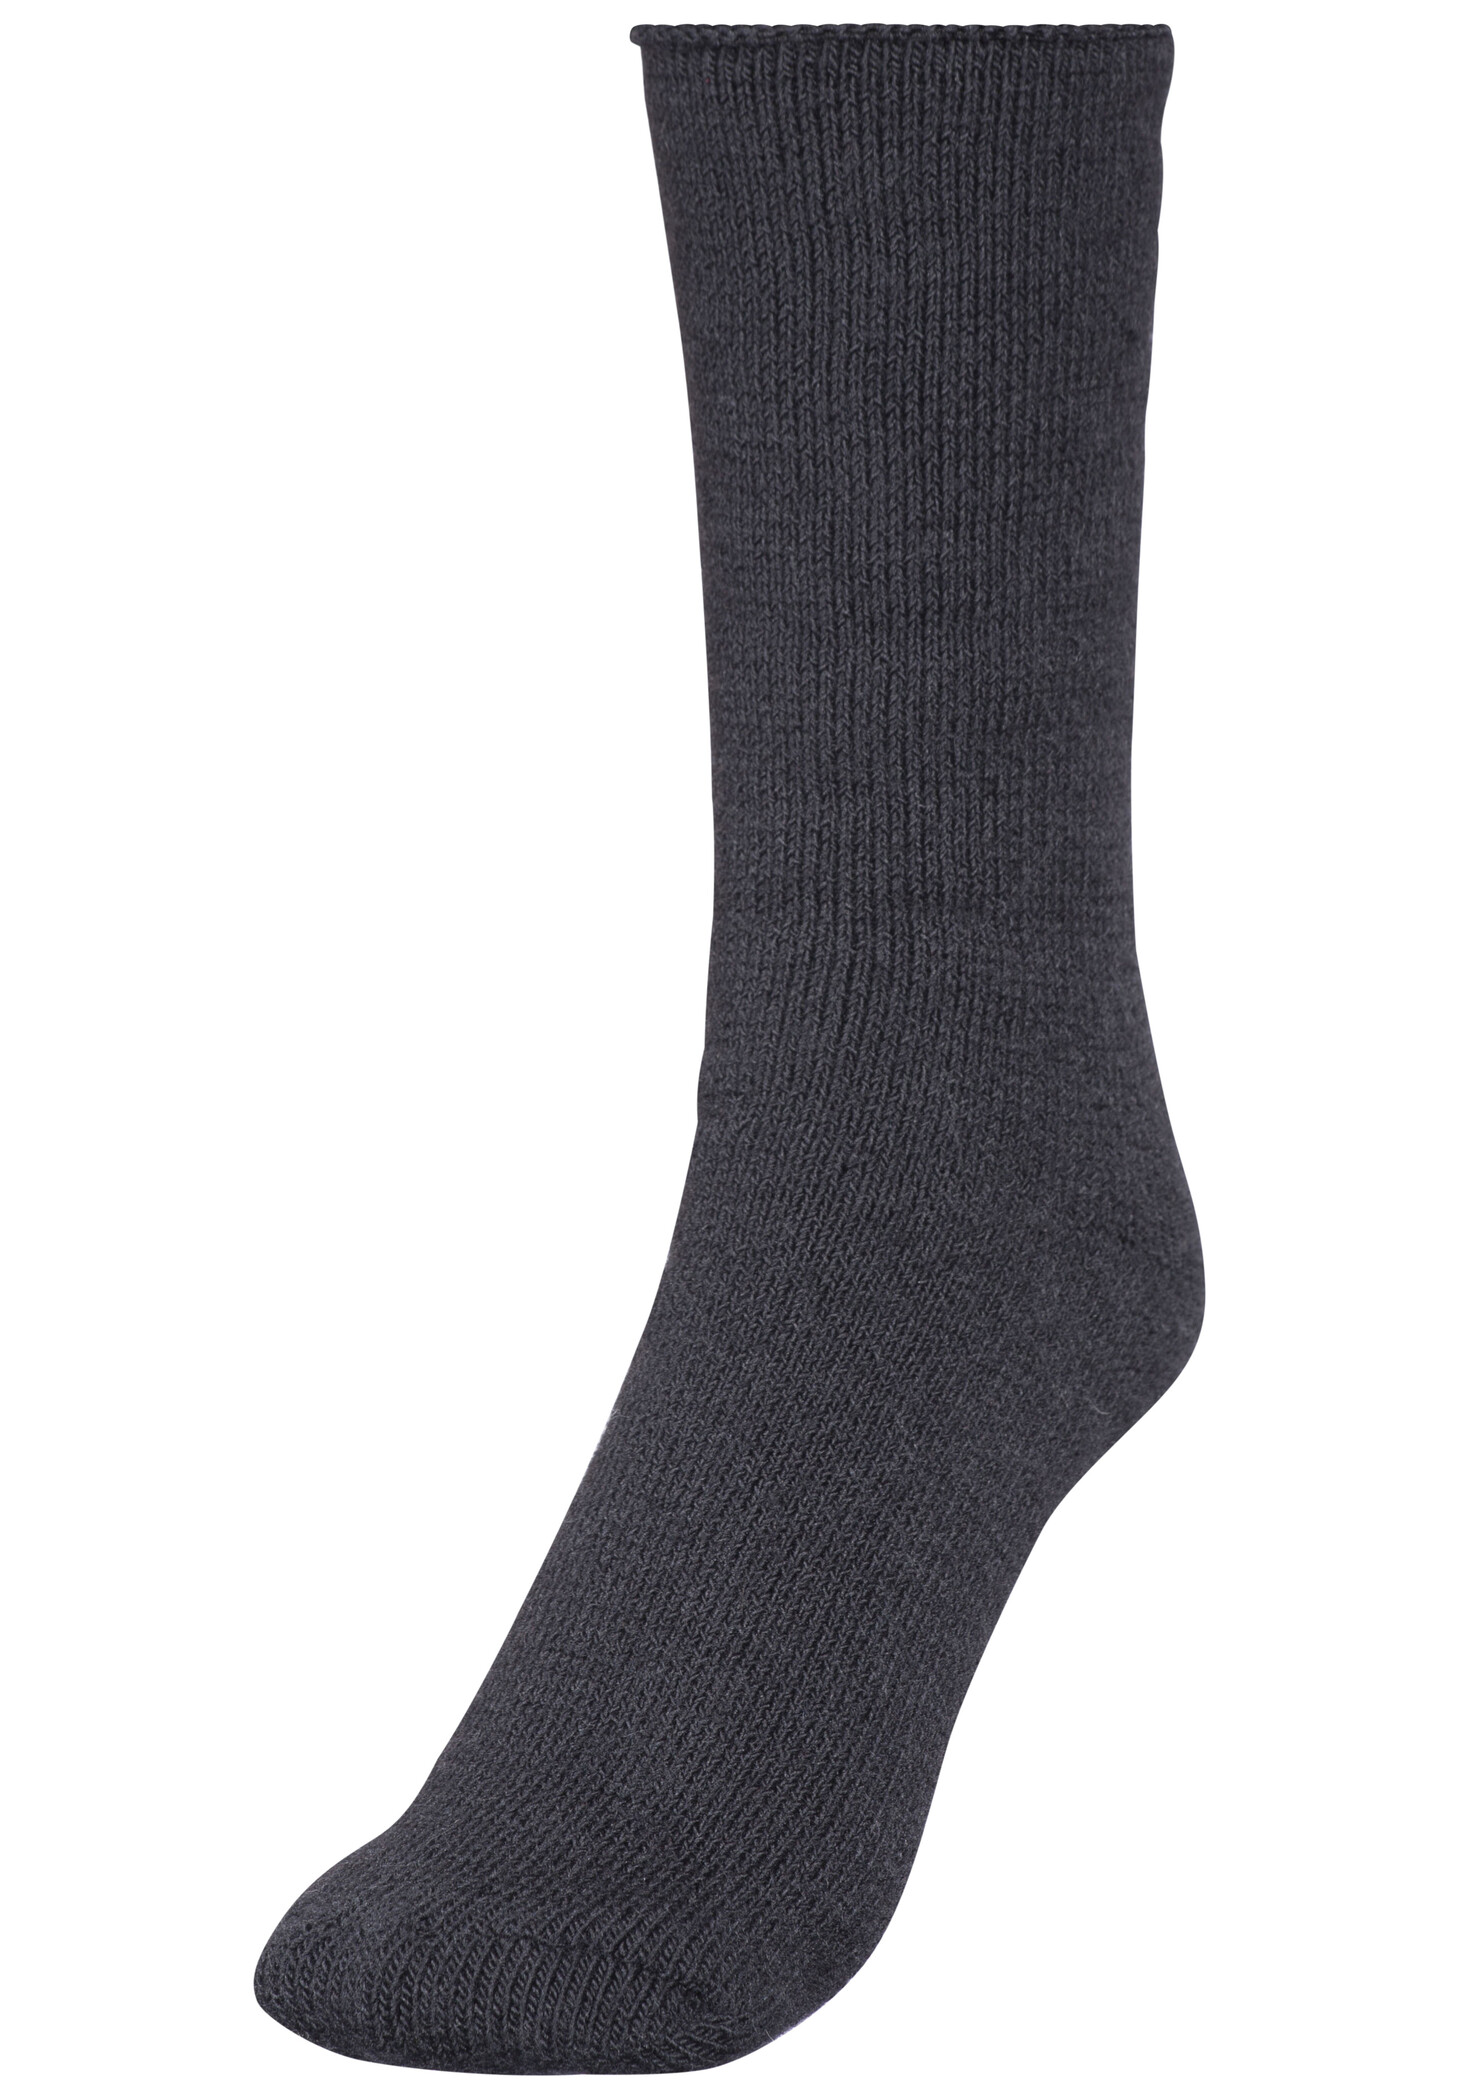 Woolpower 600 Socken schwarz